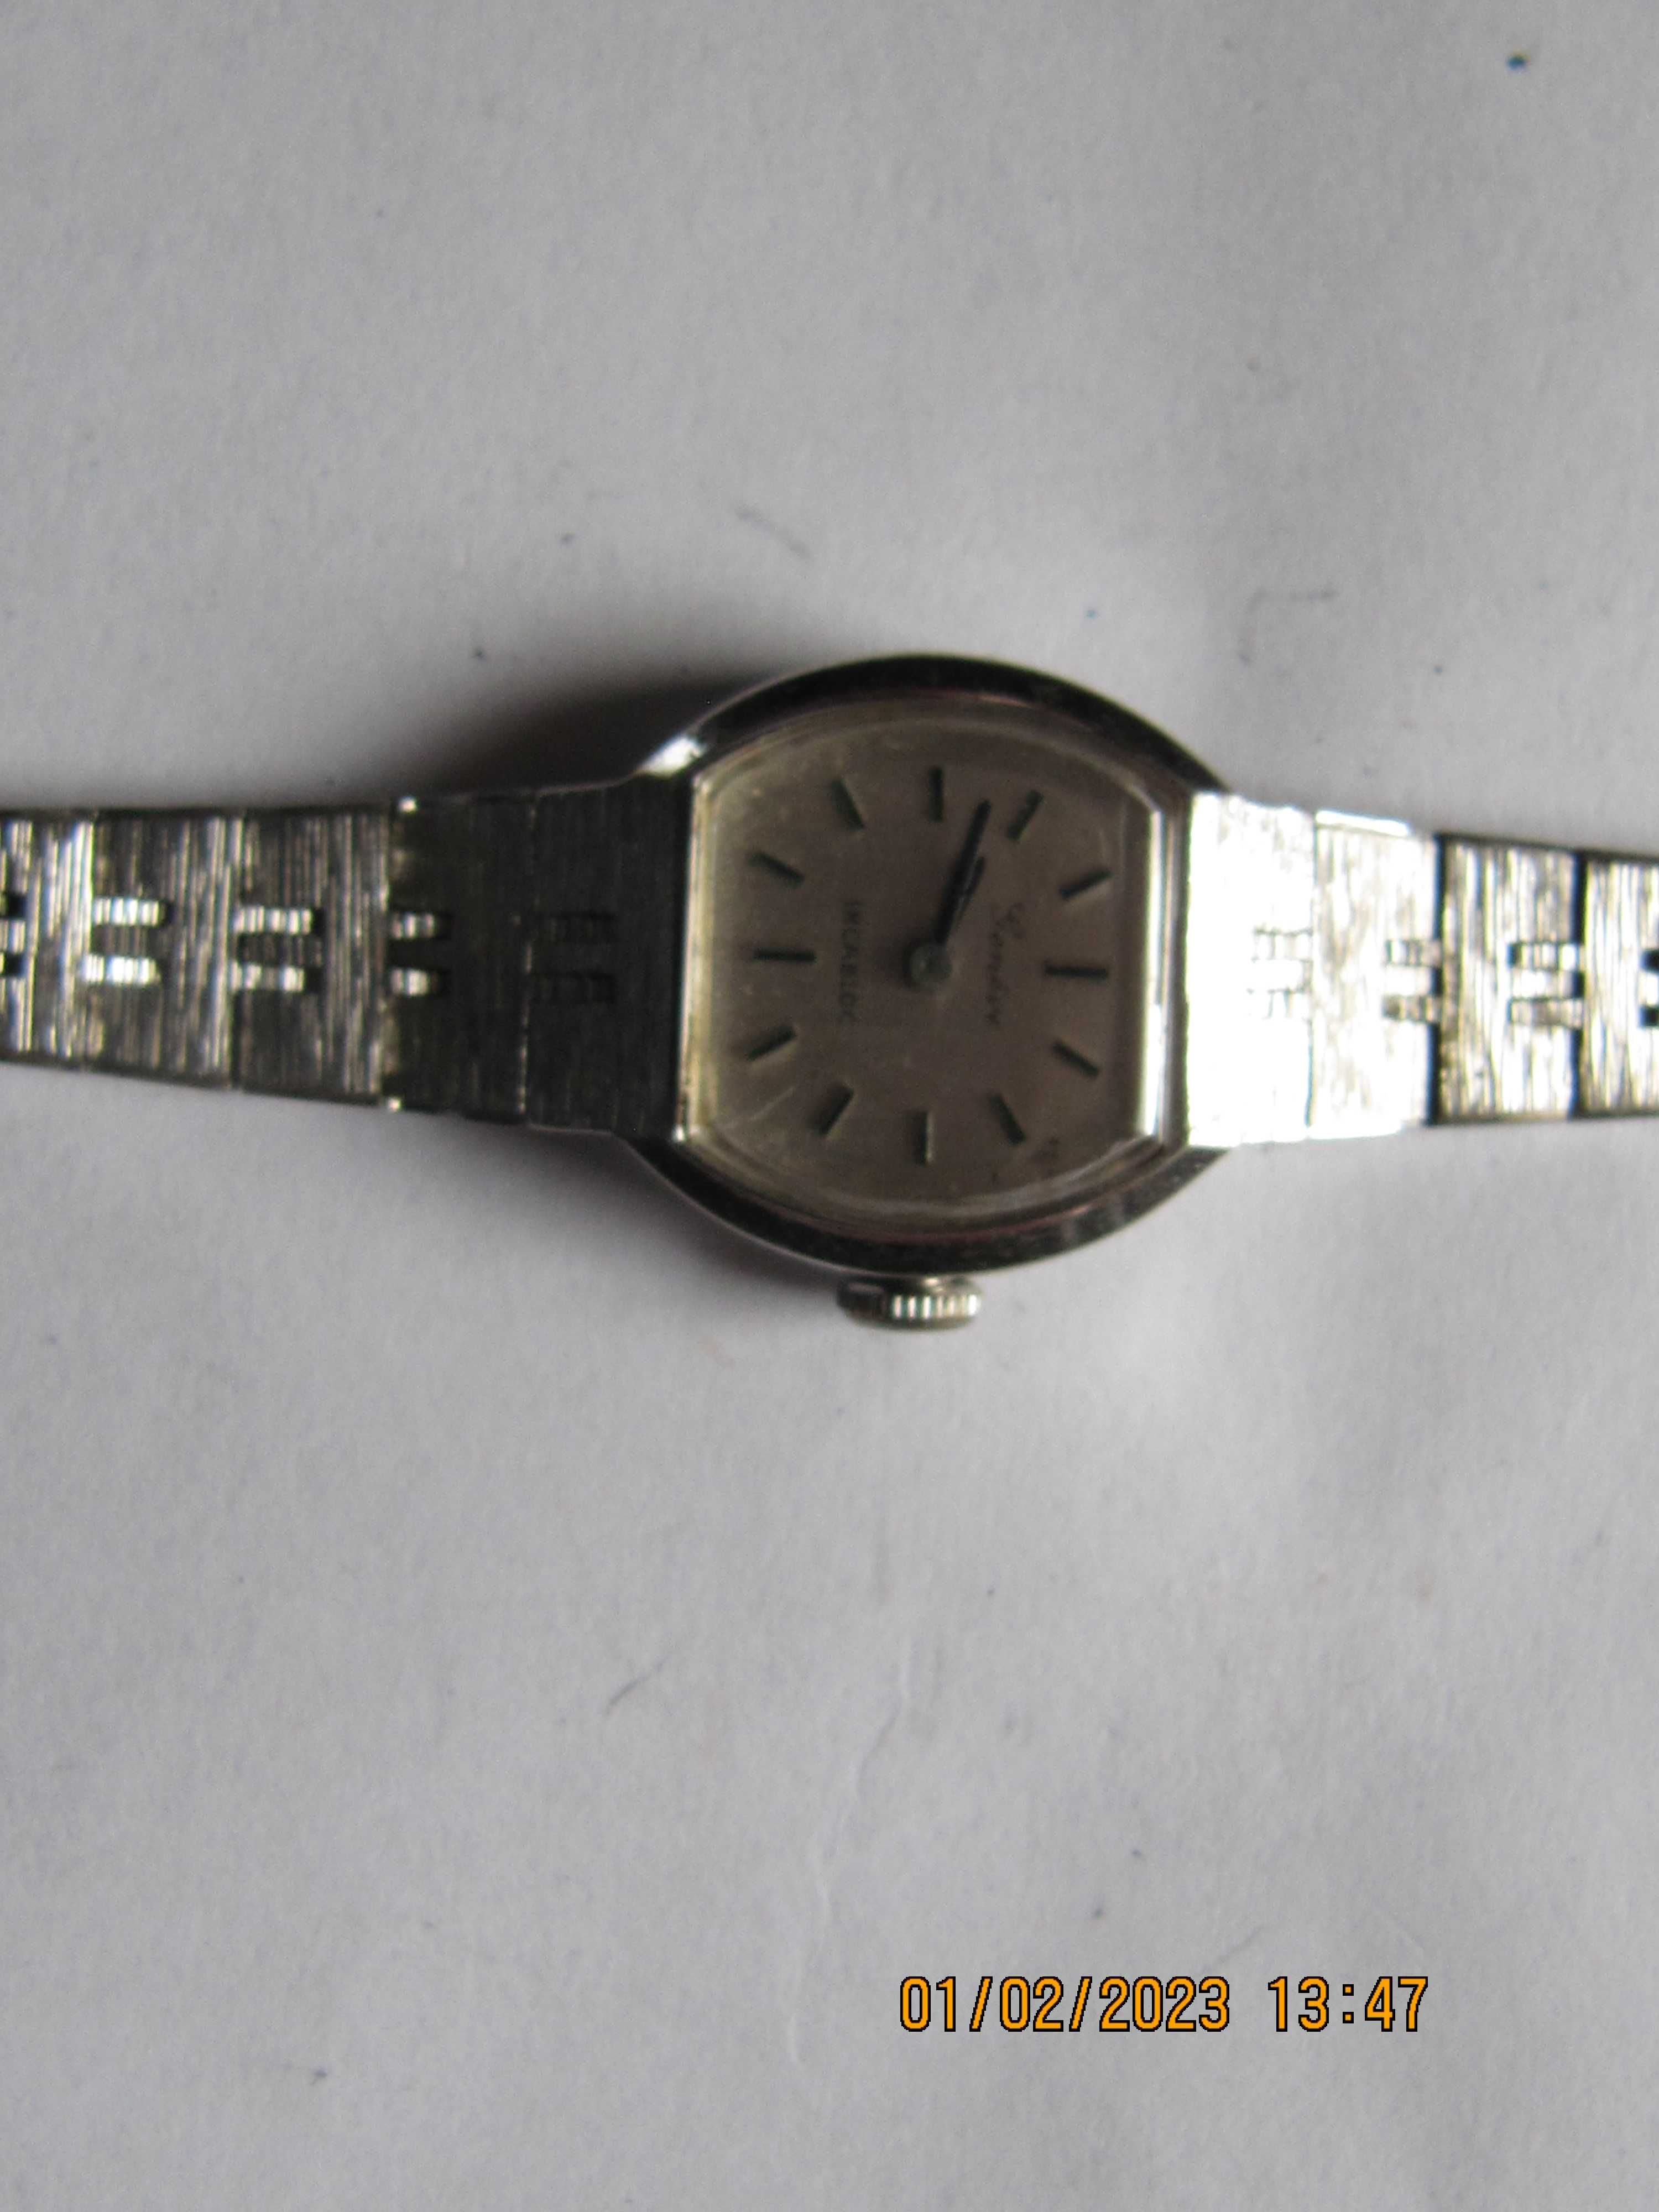 Geneva  szwajcarski damski zegarek mechaniczny